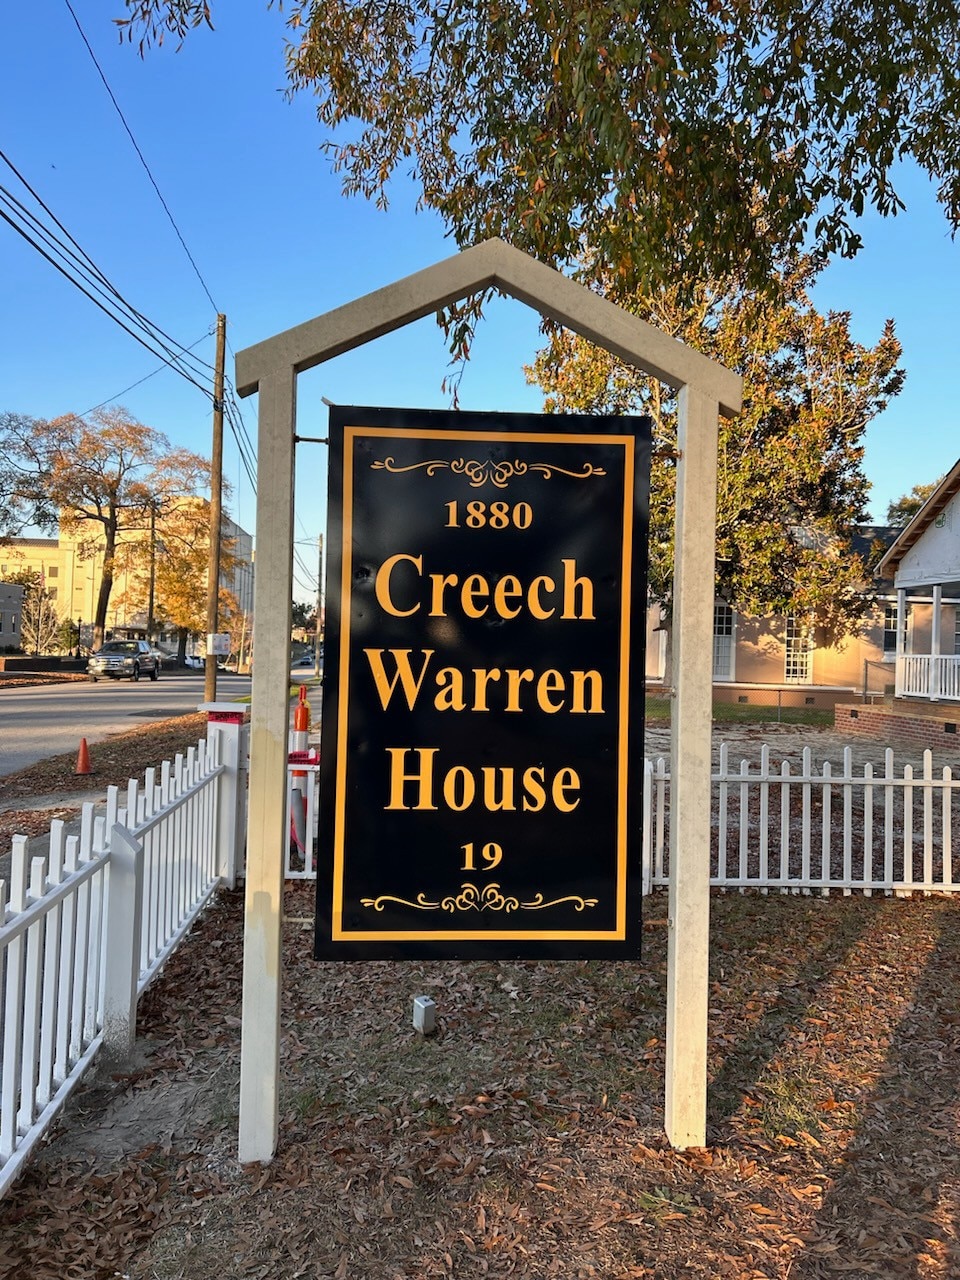 The Creech Warren House # 3